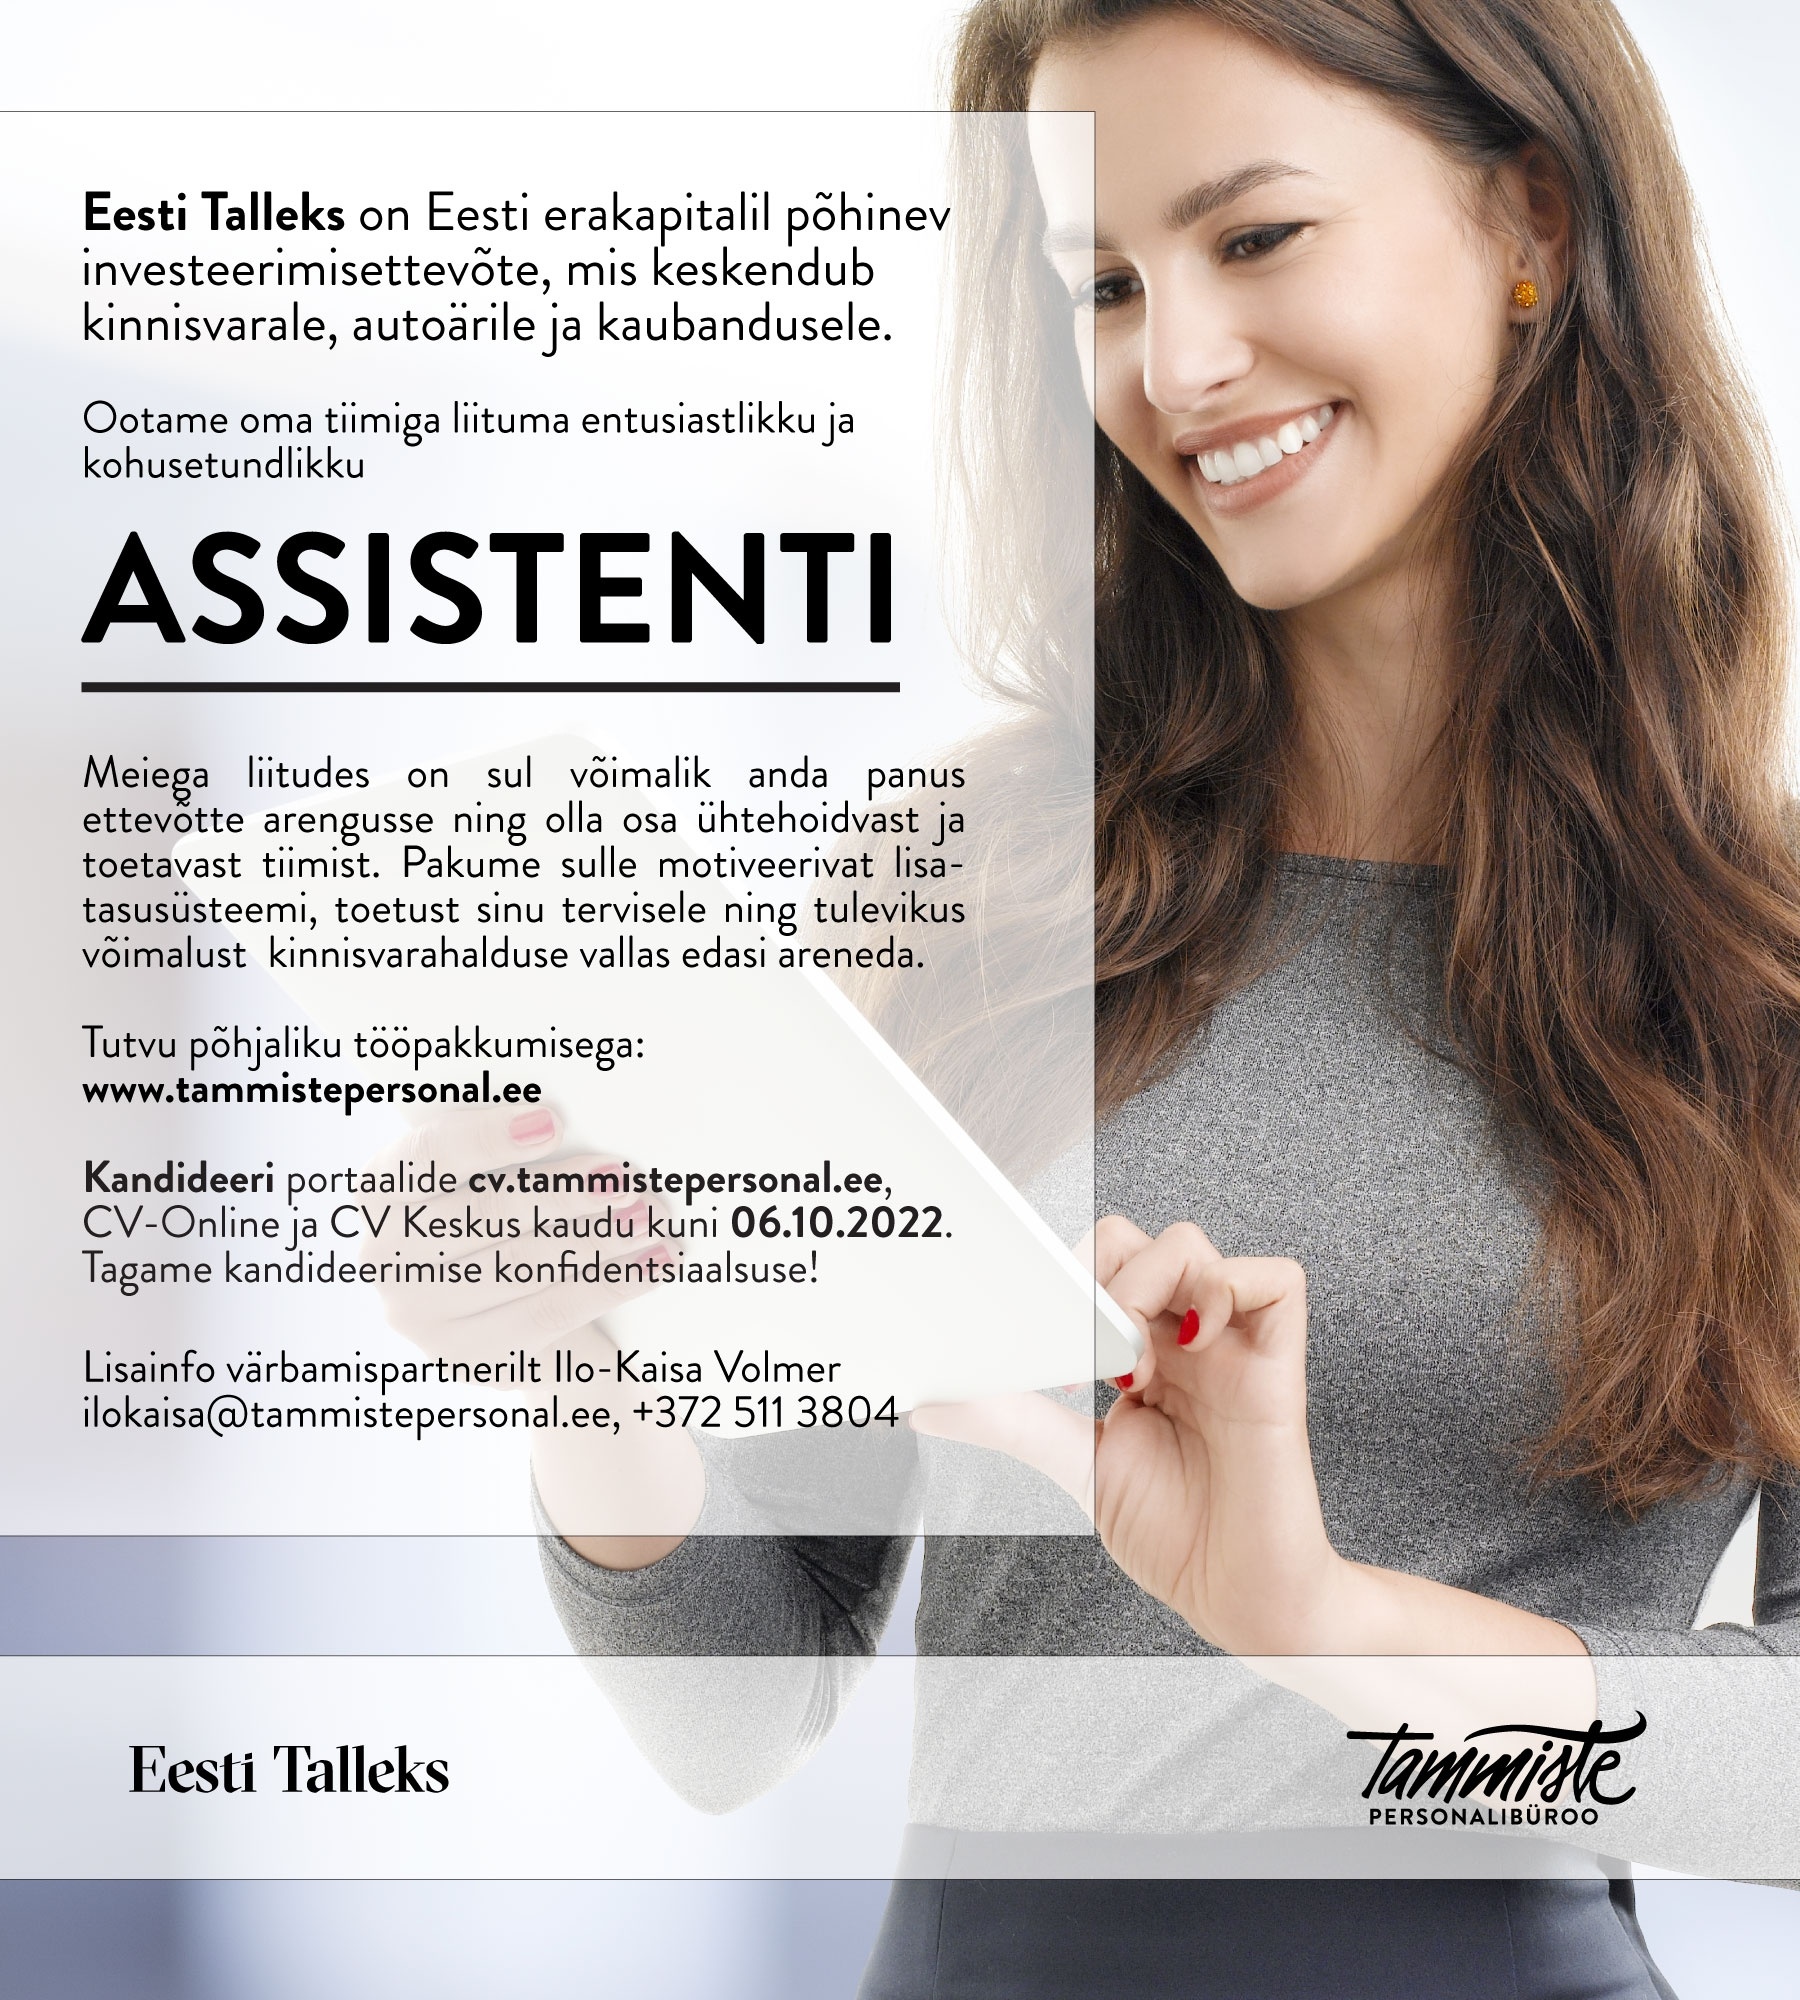 Tammiste Personalibüroo OÜ Assistent (Eesti Talleks AS)